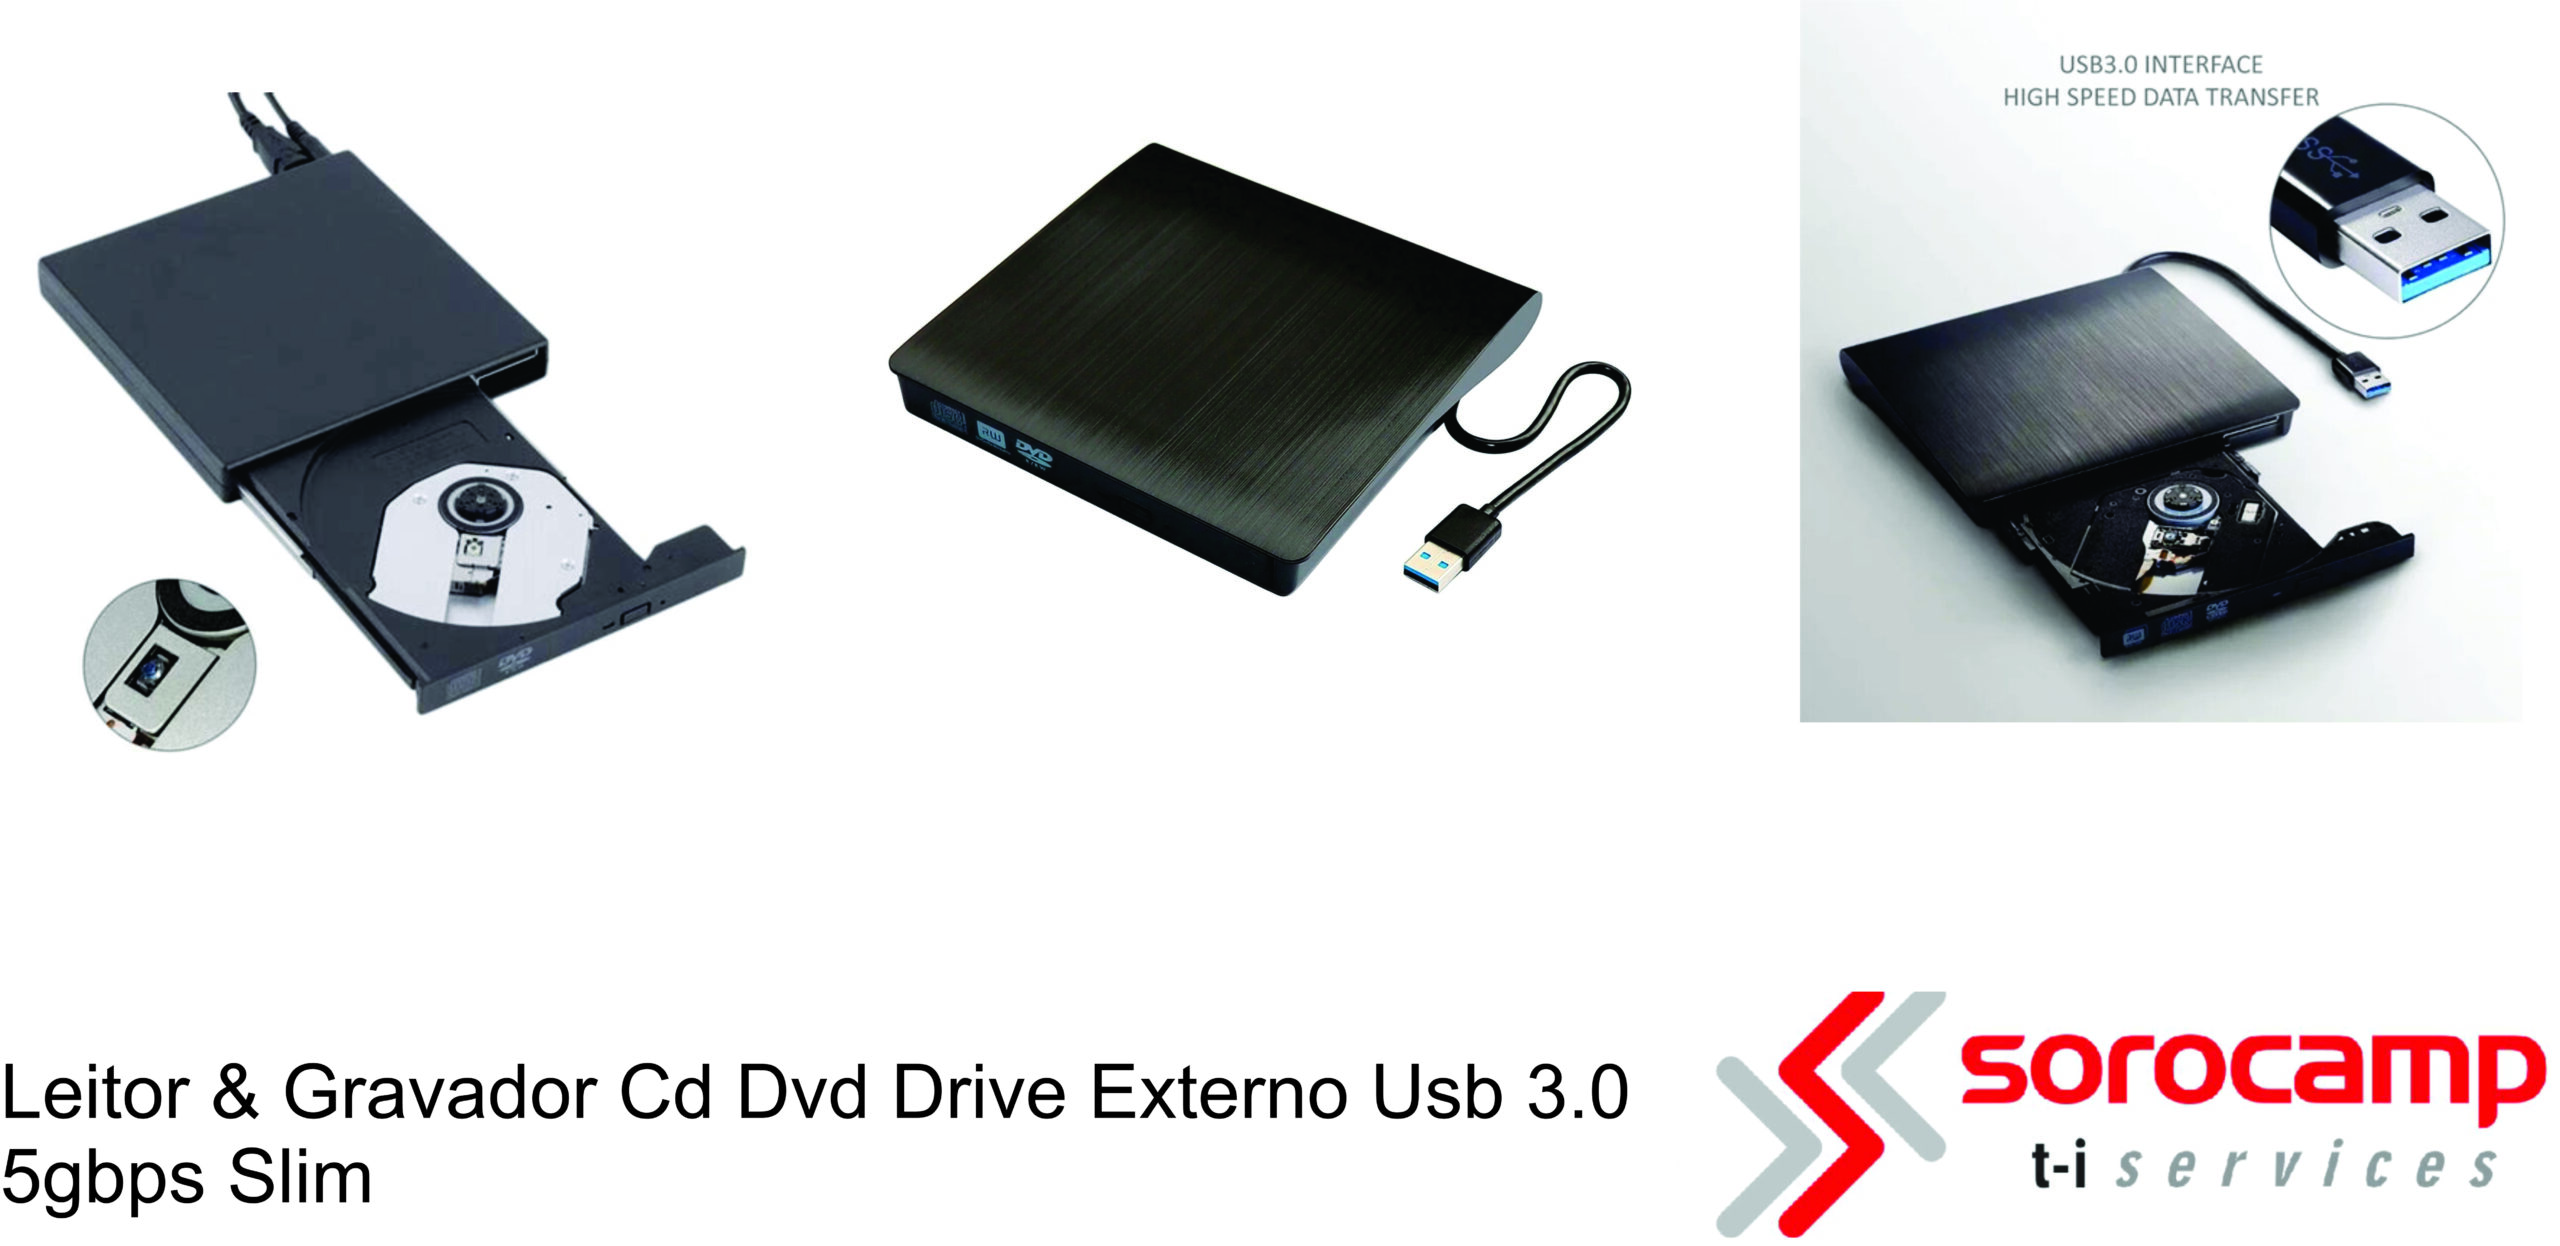 Drive Externo Slim Usb Gravador E Leitor Cd Dvd